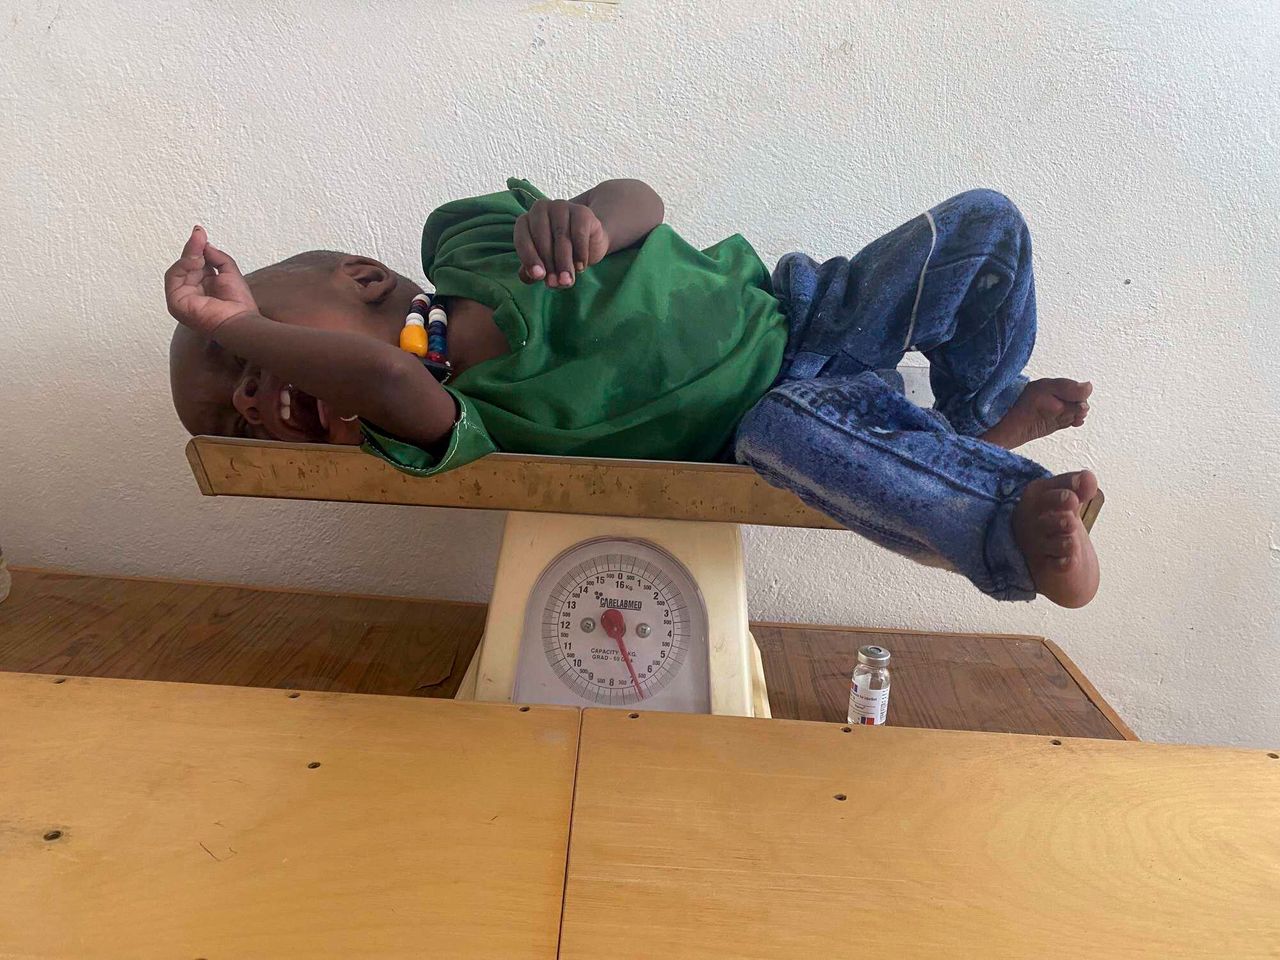 Ο Αμάνουελ Μπερχανού ζυγίζεται μετά την διάγνωση του σοβαρού υποσιτισμού του, στο Τιγκρέι, Δευτέρα 19 Ιουλίου 2021. (Zerihun Sewunet/UNICEF via AP)